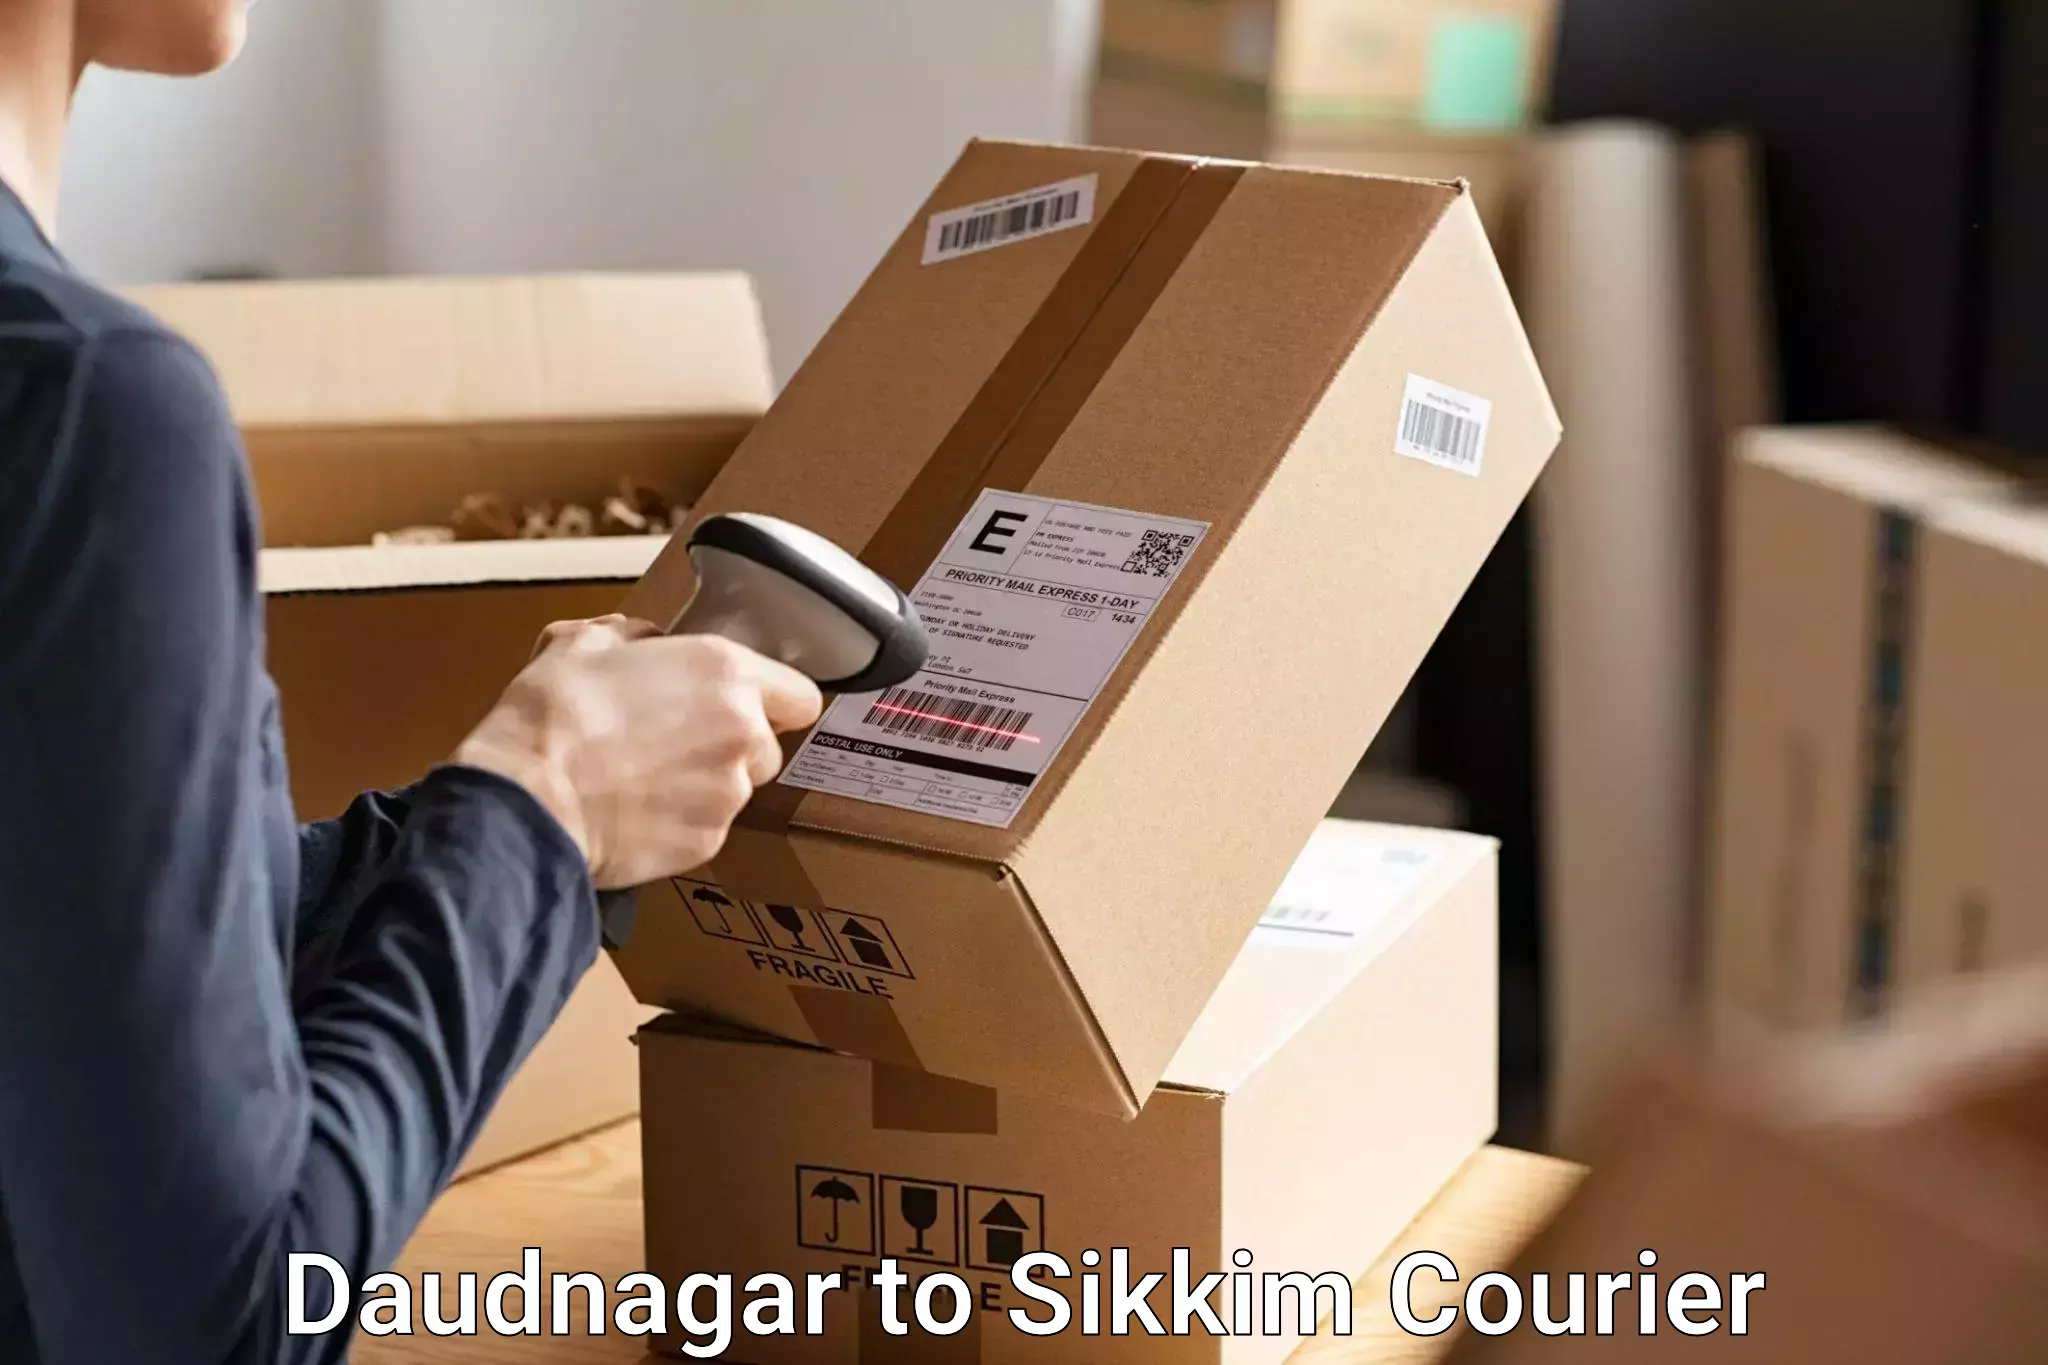 Baggage shipping service in Daudnagar to Sikkim